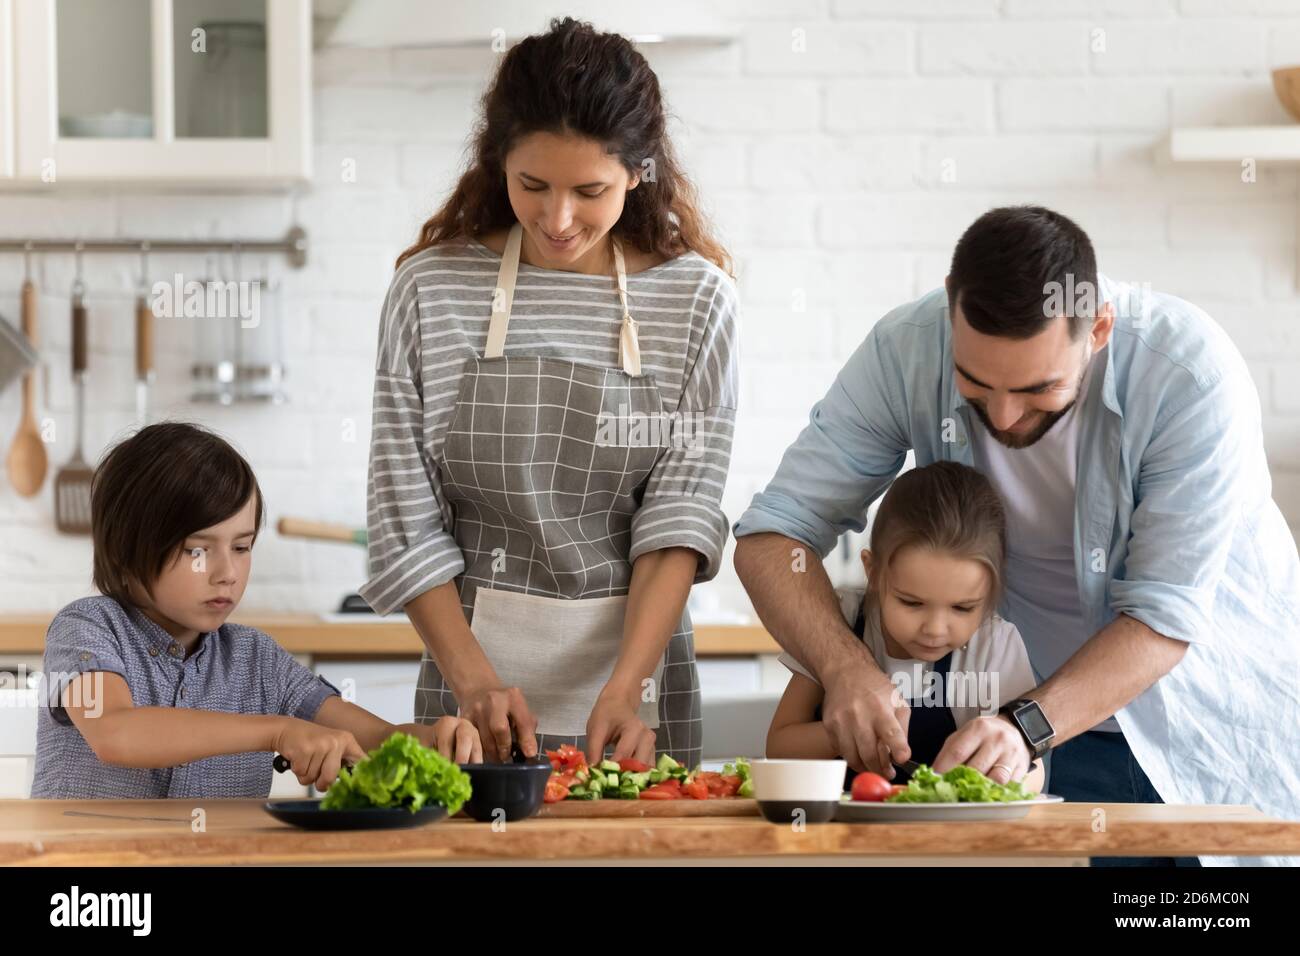 Glückliche Familie mit zwei kleinen Kindern, die Salat kochen, Gemüse schneiden Stockfoto